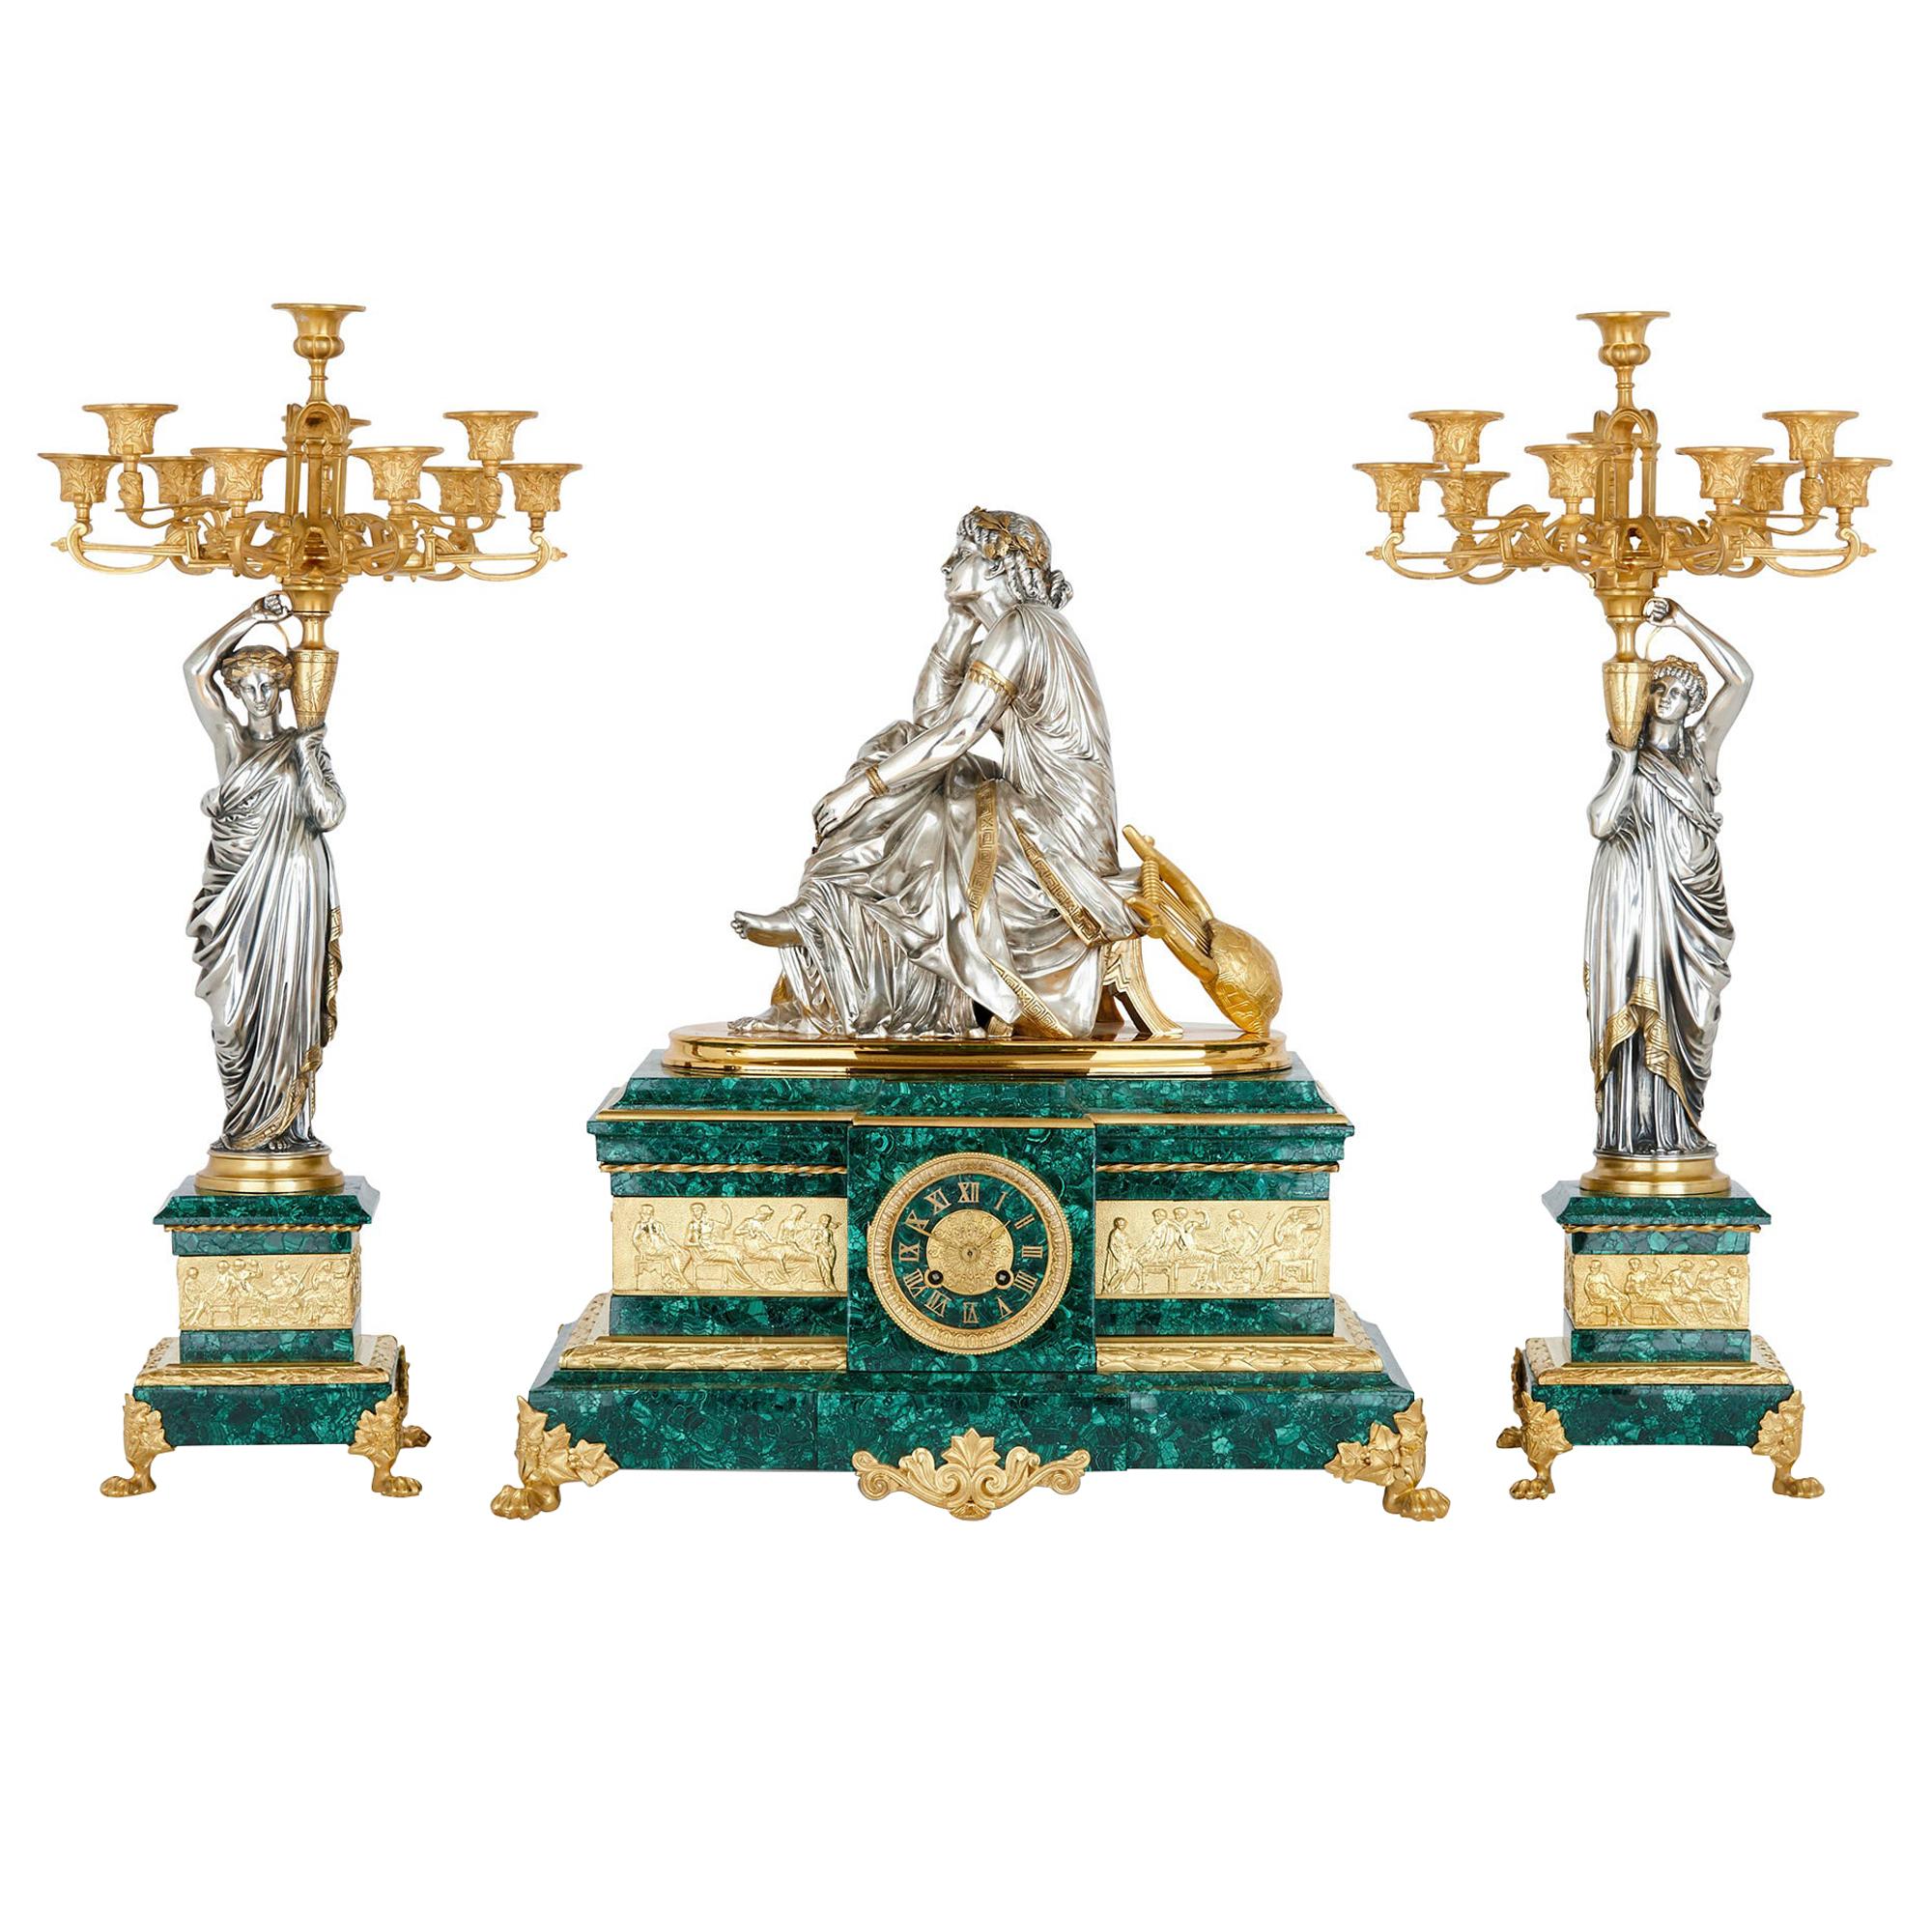 Ensemble de trois pièces d'horloges françaises en malachite et bronze argenté montées sur bronze doré